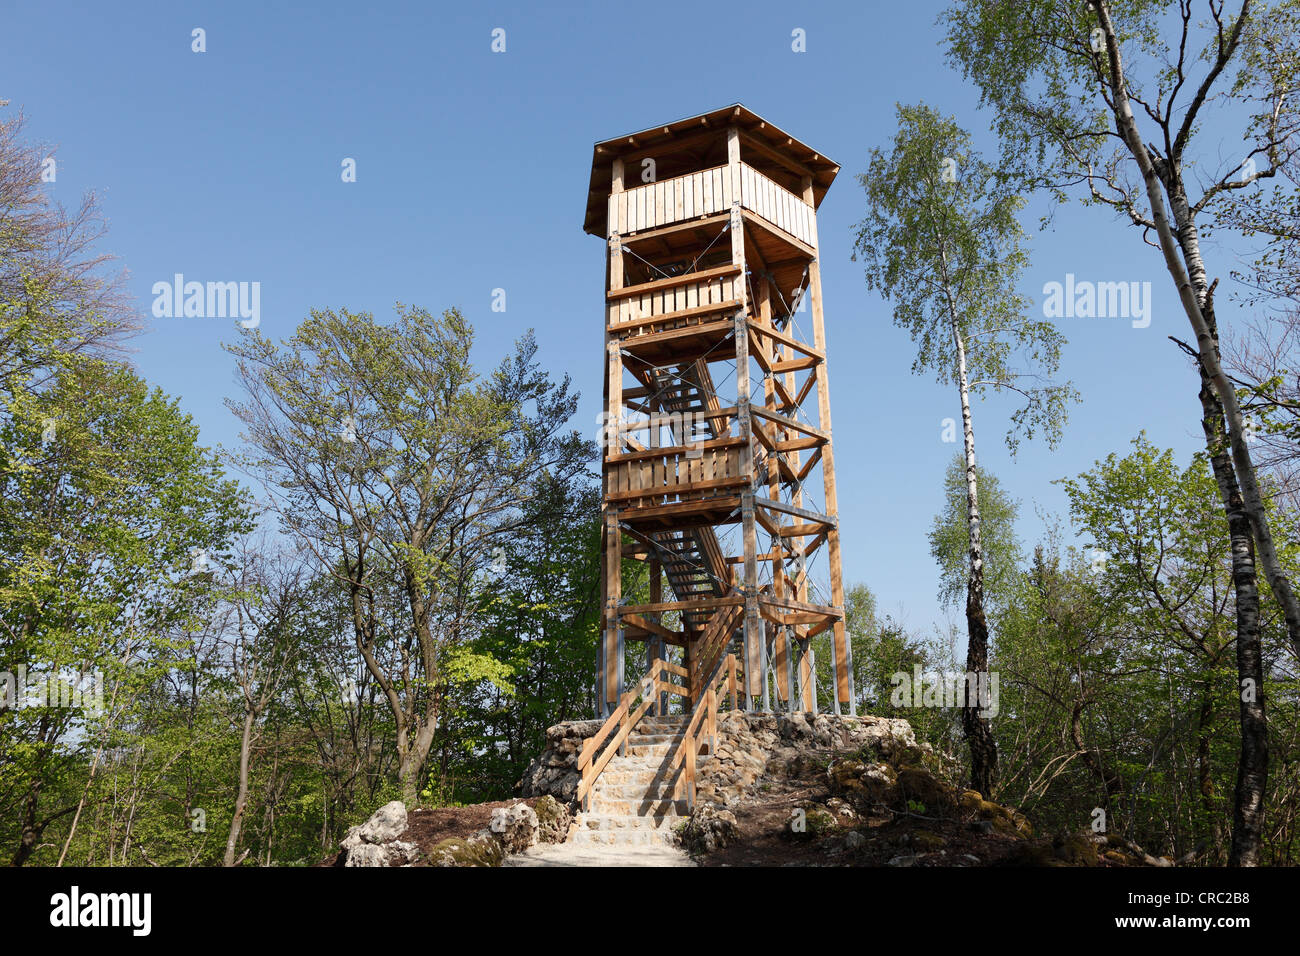 Hohes Kreuz observation tower at Muggendorf, Franconian Switzerland, Upper Franconia, Bavaria, Germany, Europe Stock Photo